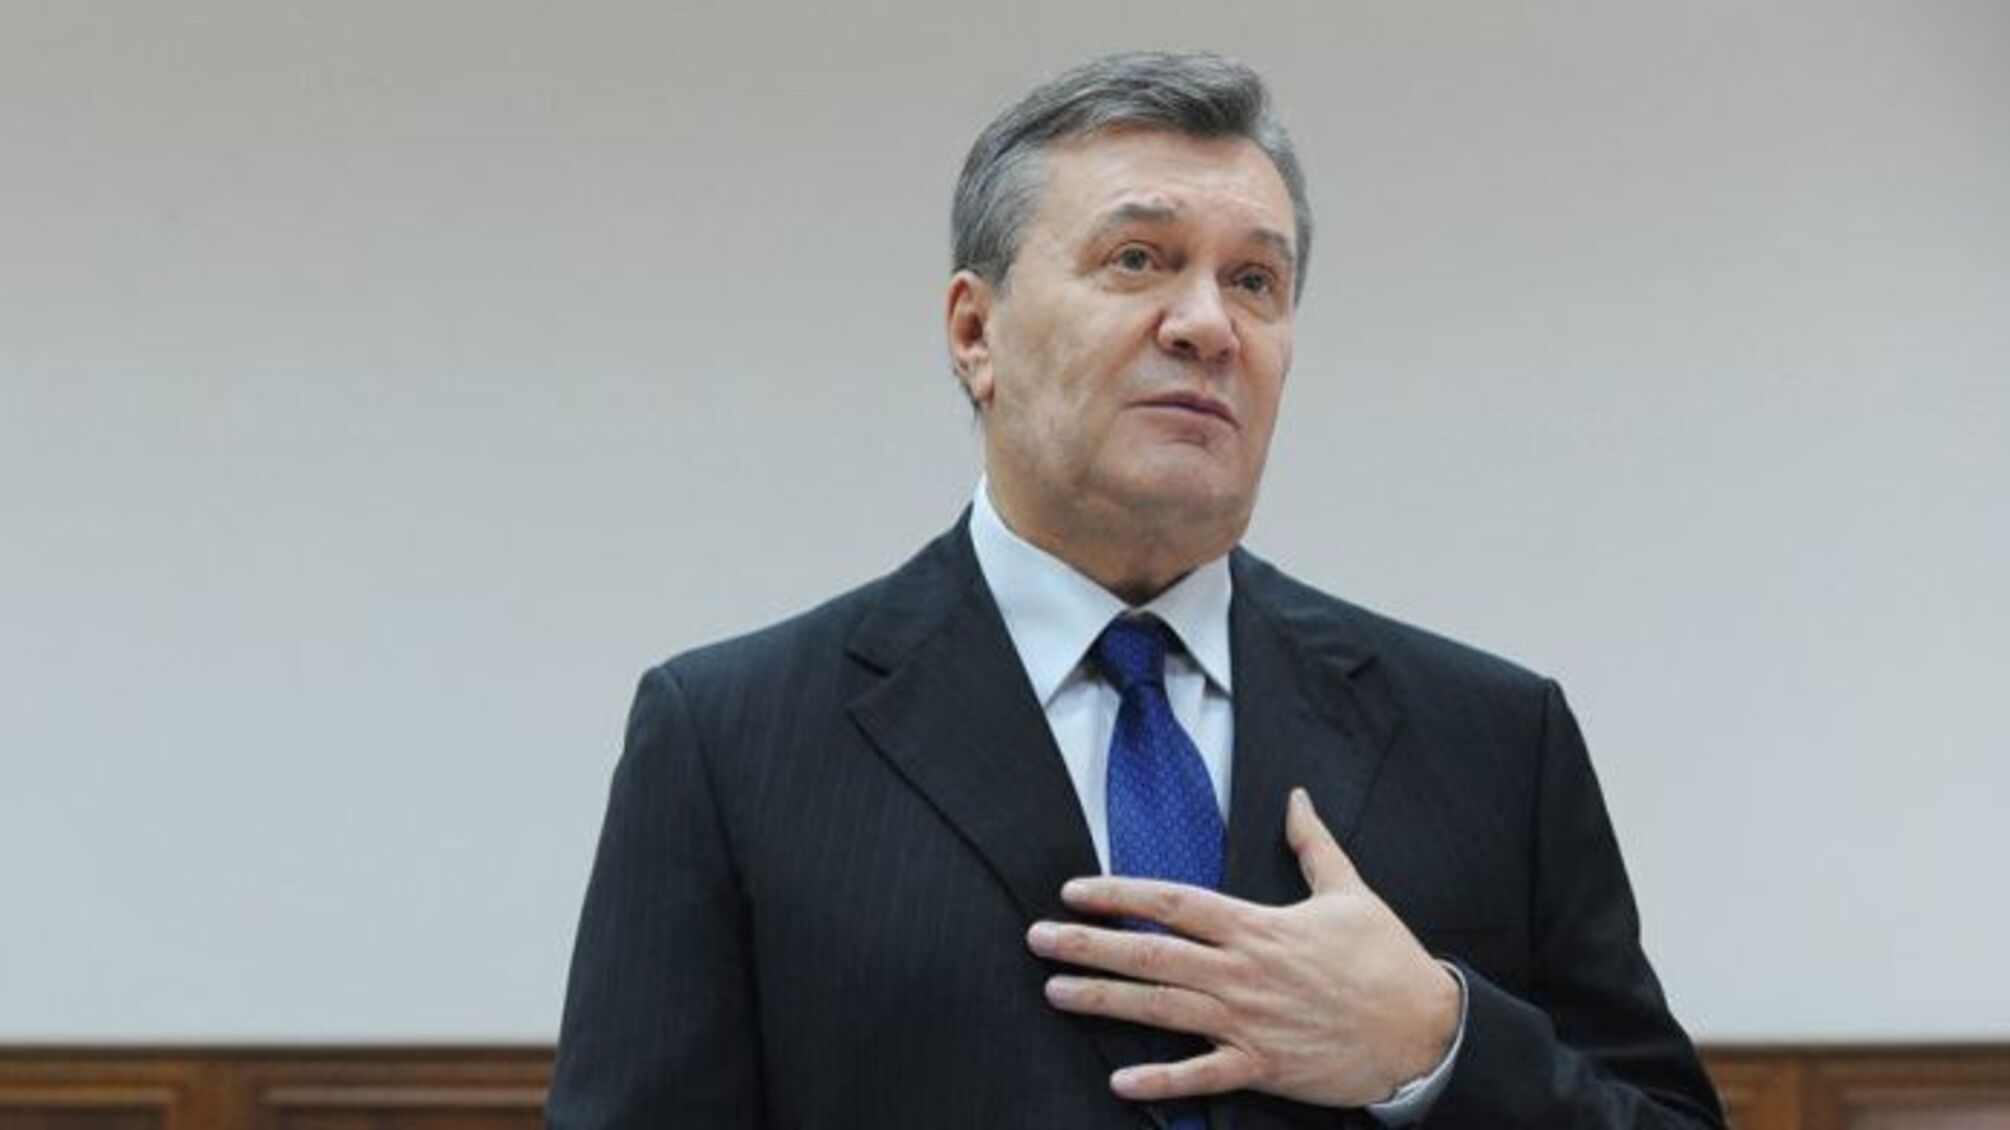 Відео оголошення вироку Януковичу – зраднику загрожує довічне ув'язнення: онлайн-трансляція суду в Києві